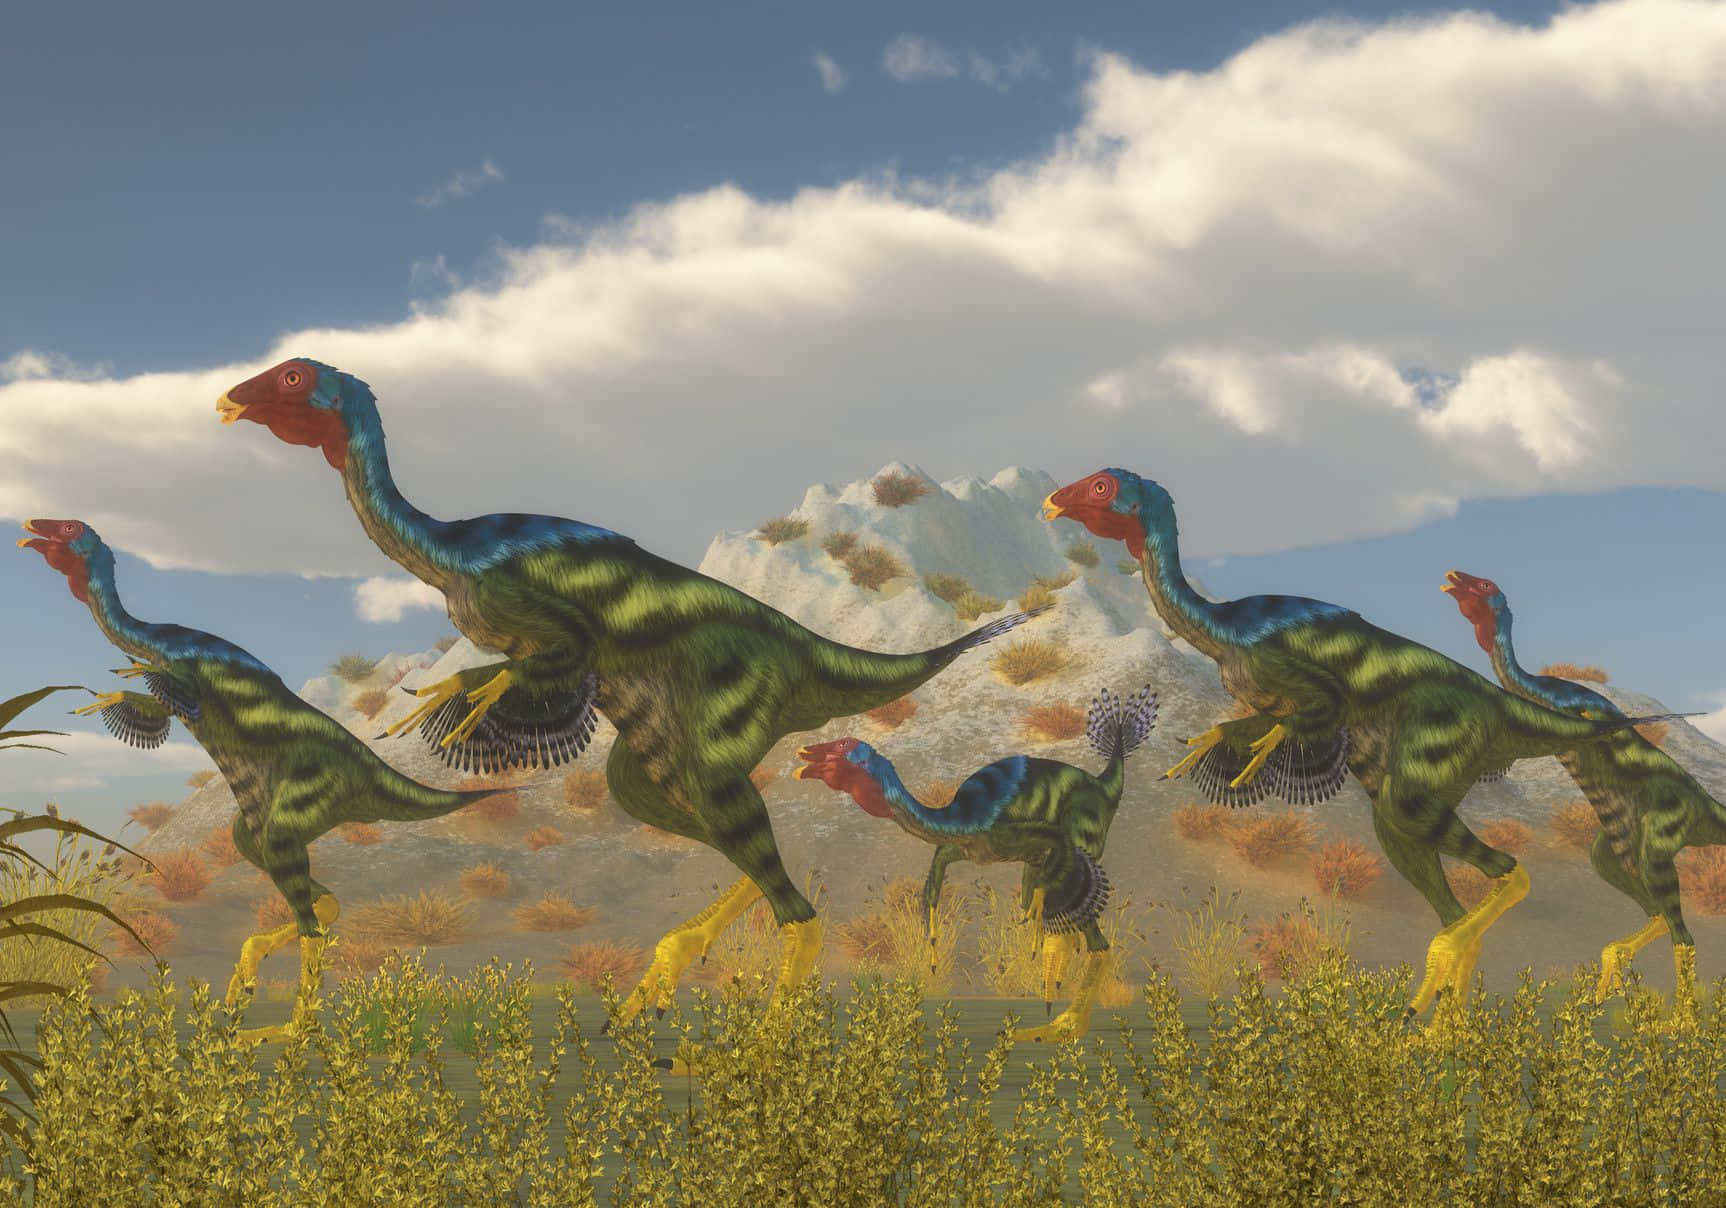 A Stegosaurus dinosaur walking in a natural habitat